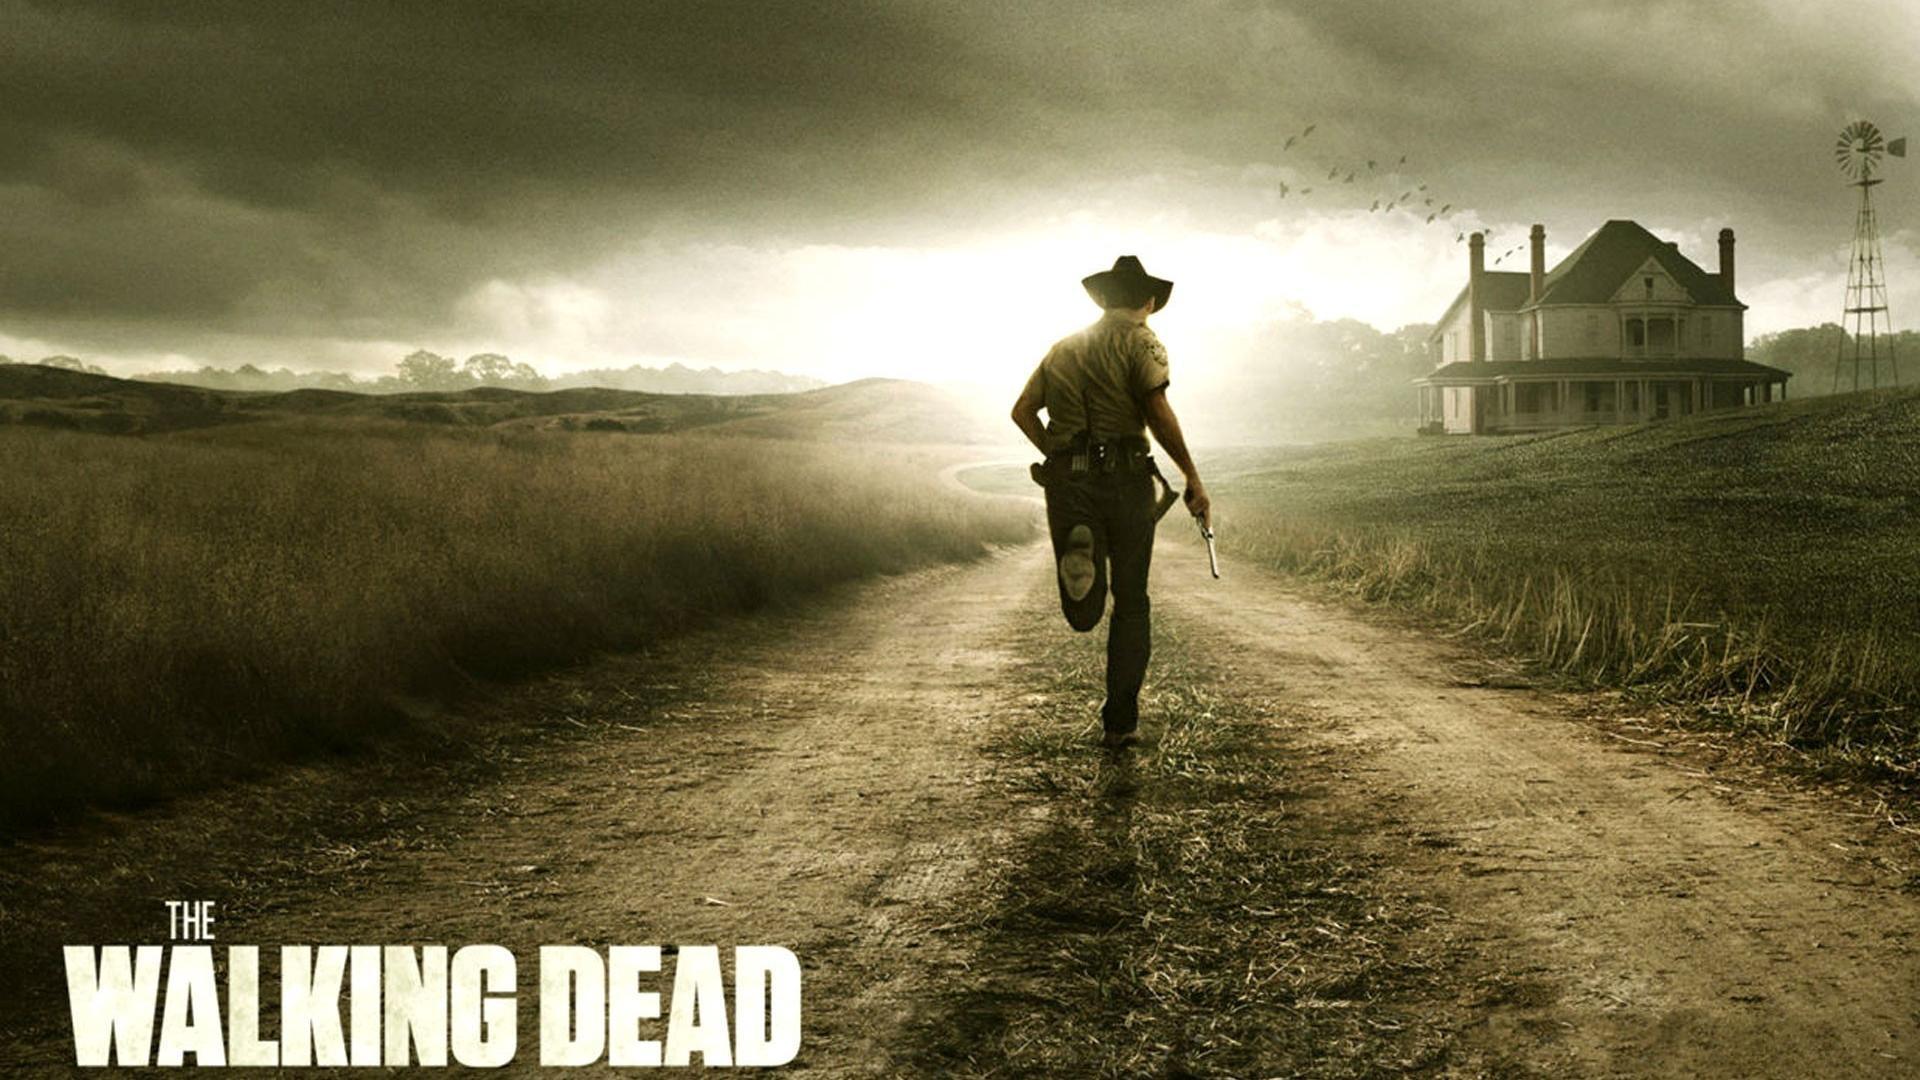 The Walking Dead Wallpaper Hd: The Walking Dead Serial Movie